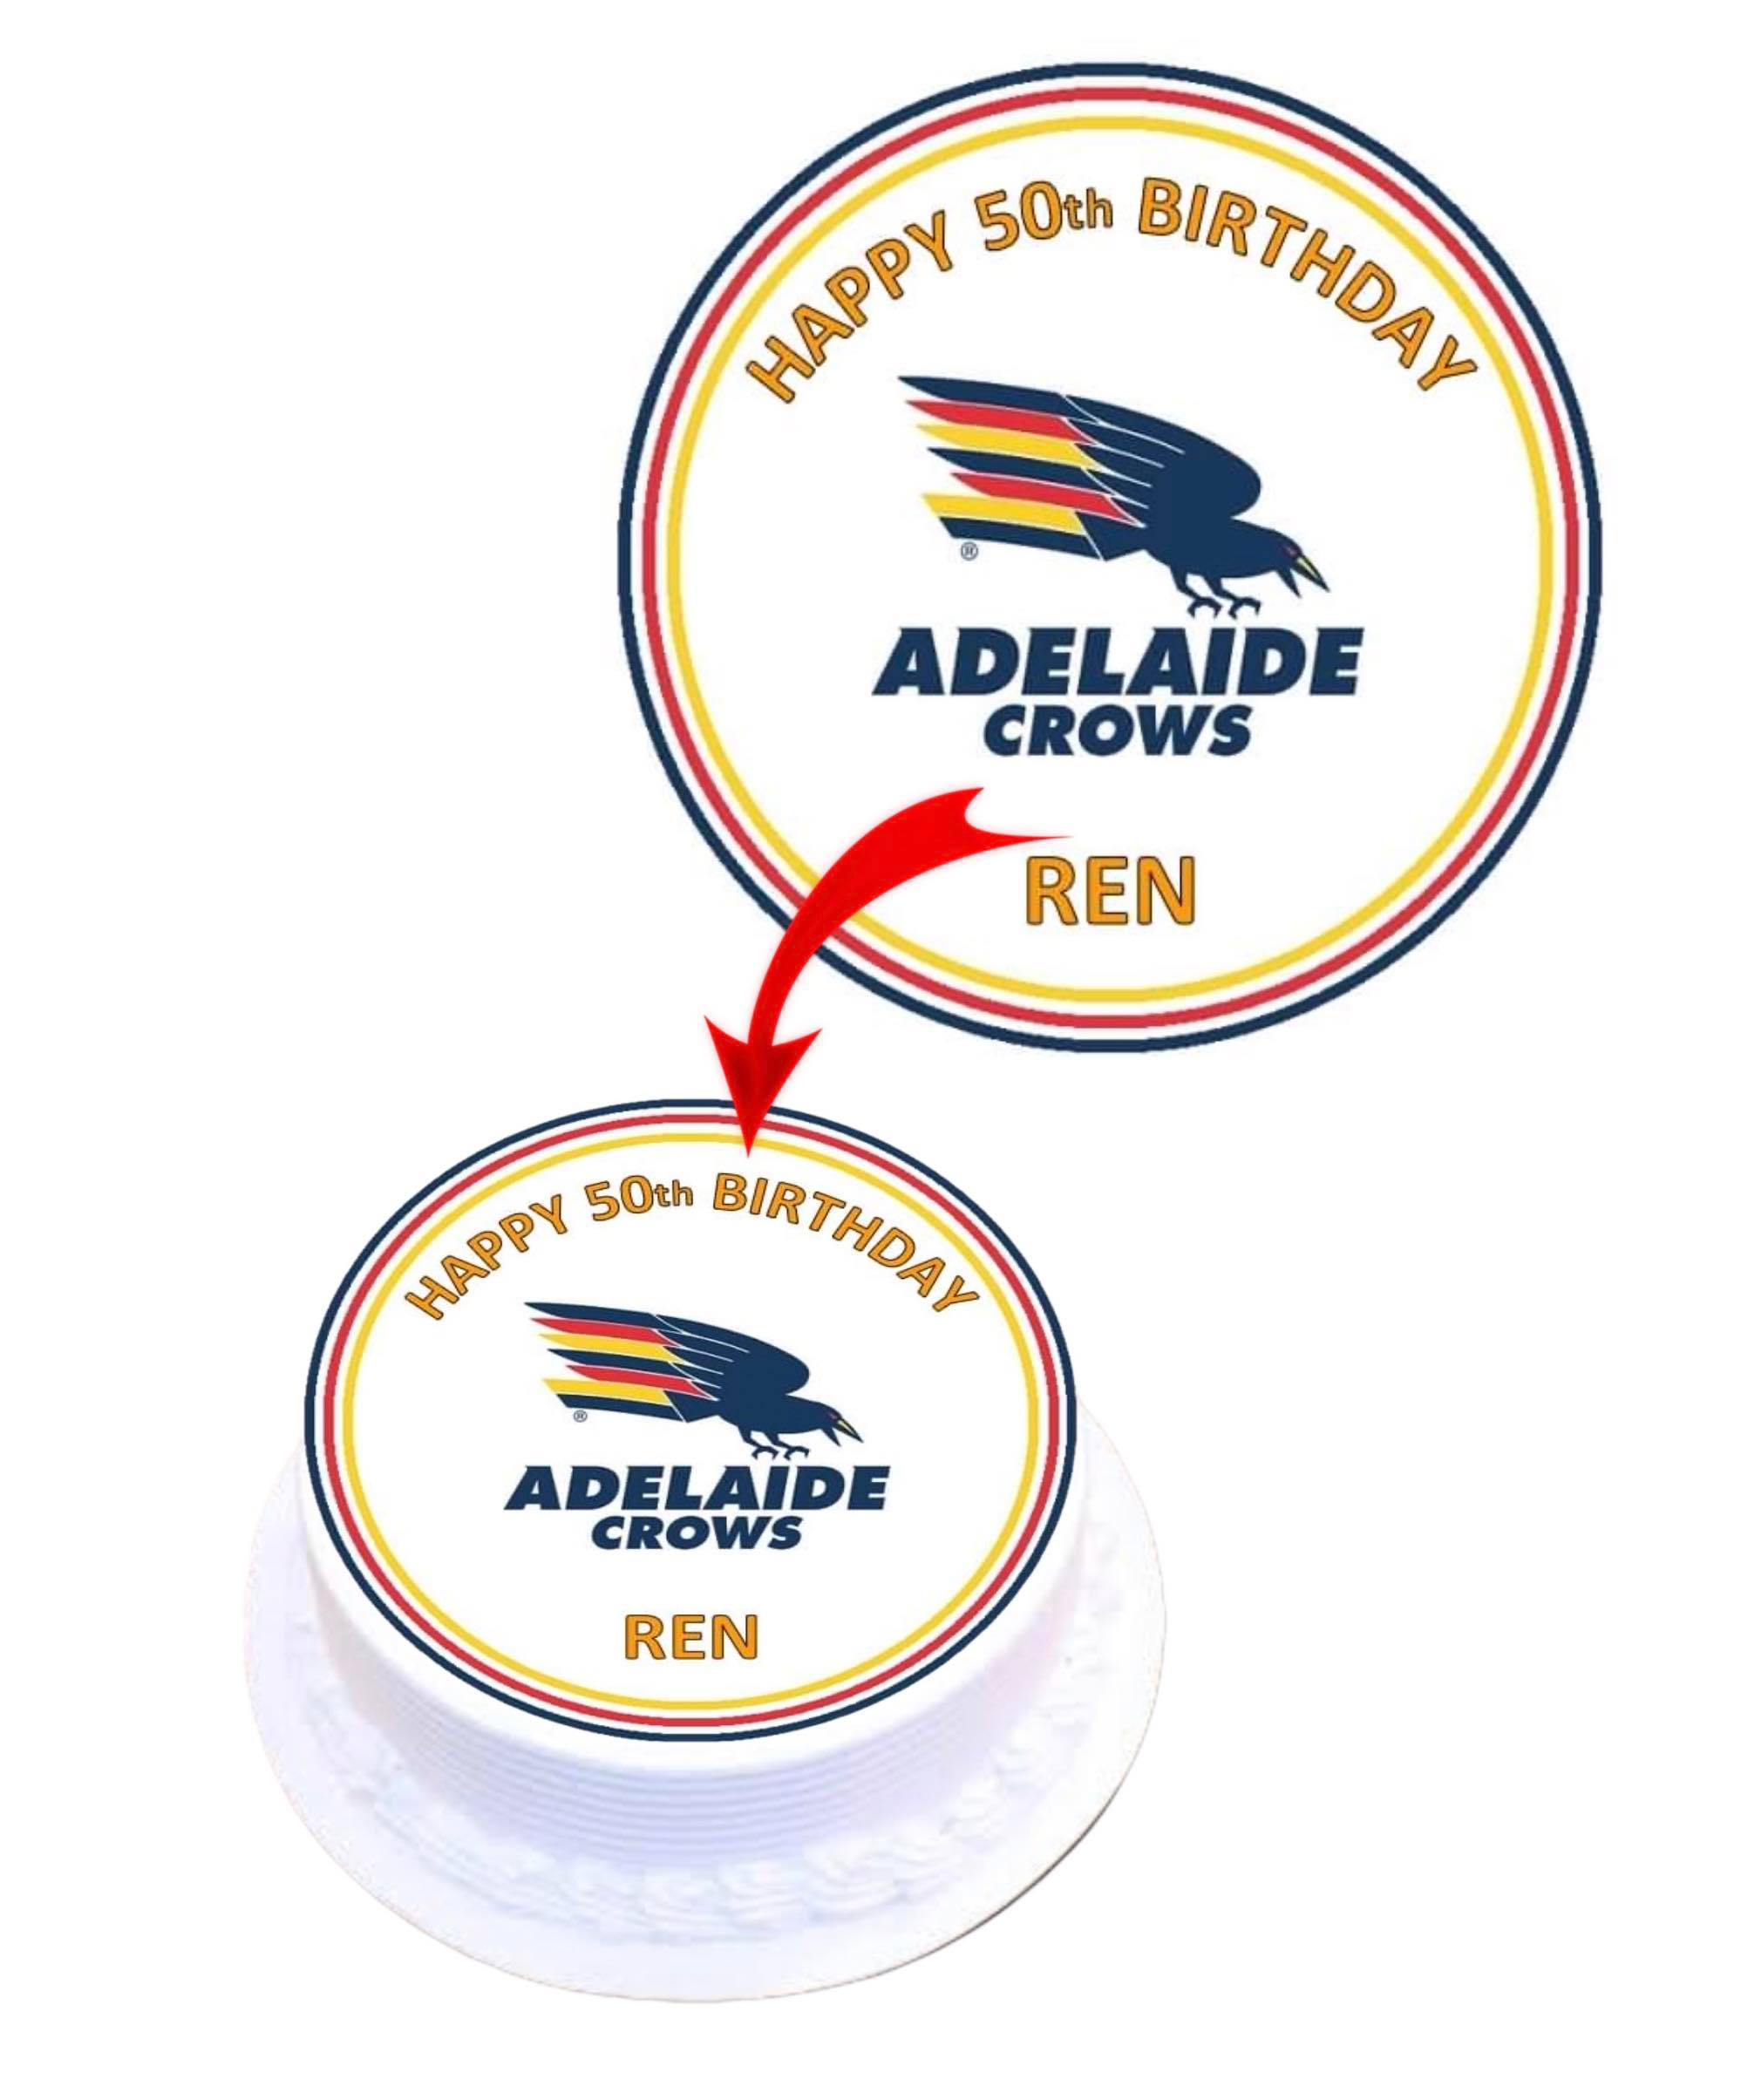 Tìm địa chỉ cửa hàng kinh doanh phụ kiện trang trí bánh ở Adelaide?